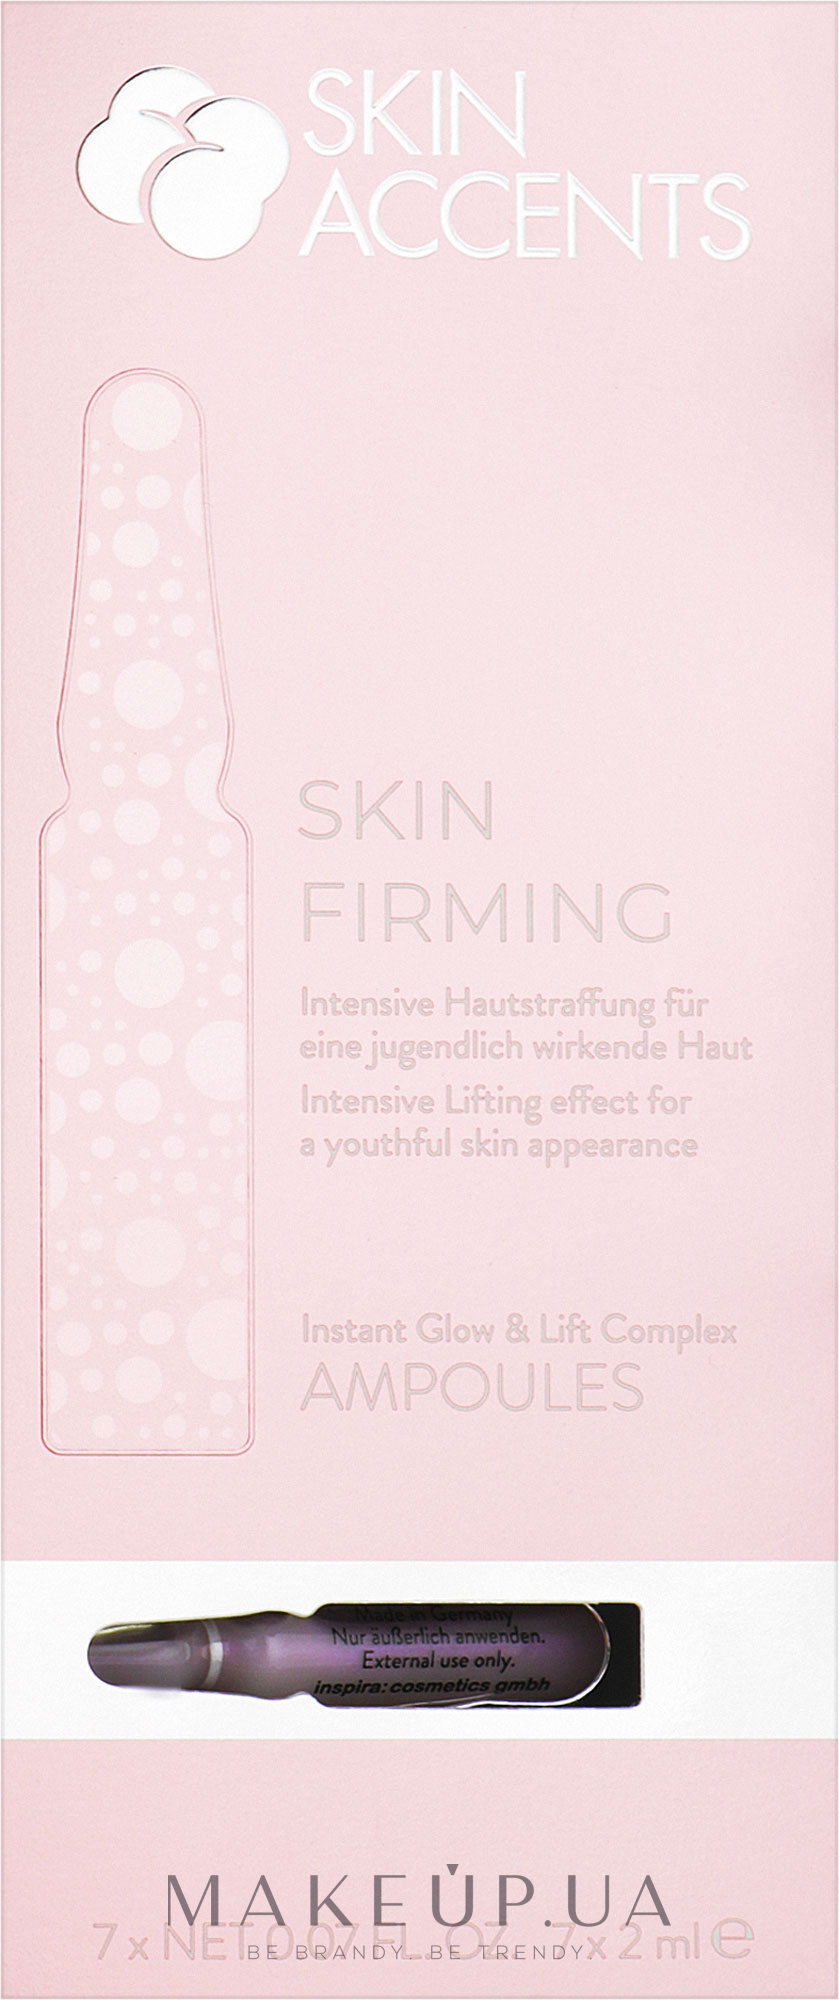 Мгновенное сияние и лифтинг кожи концентрат - Inspira:cosmetics Skin Accents Instant Glow & Lift Complex — фото 7x2ml